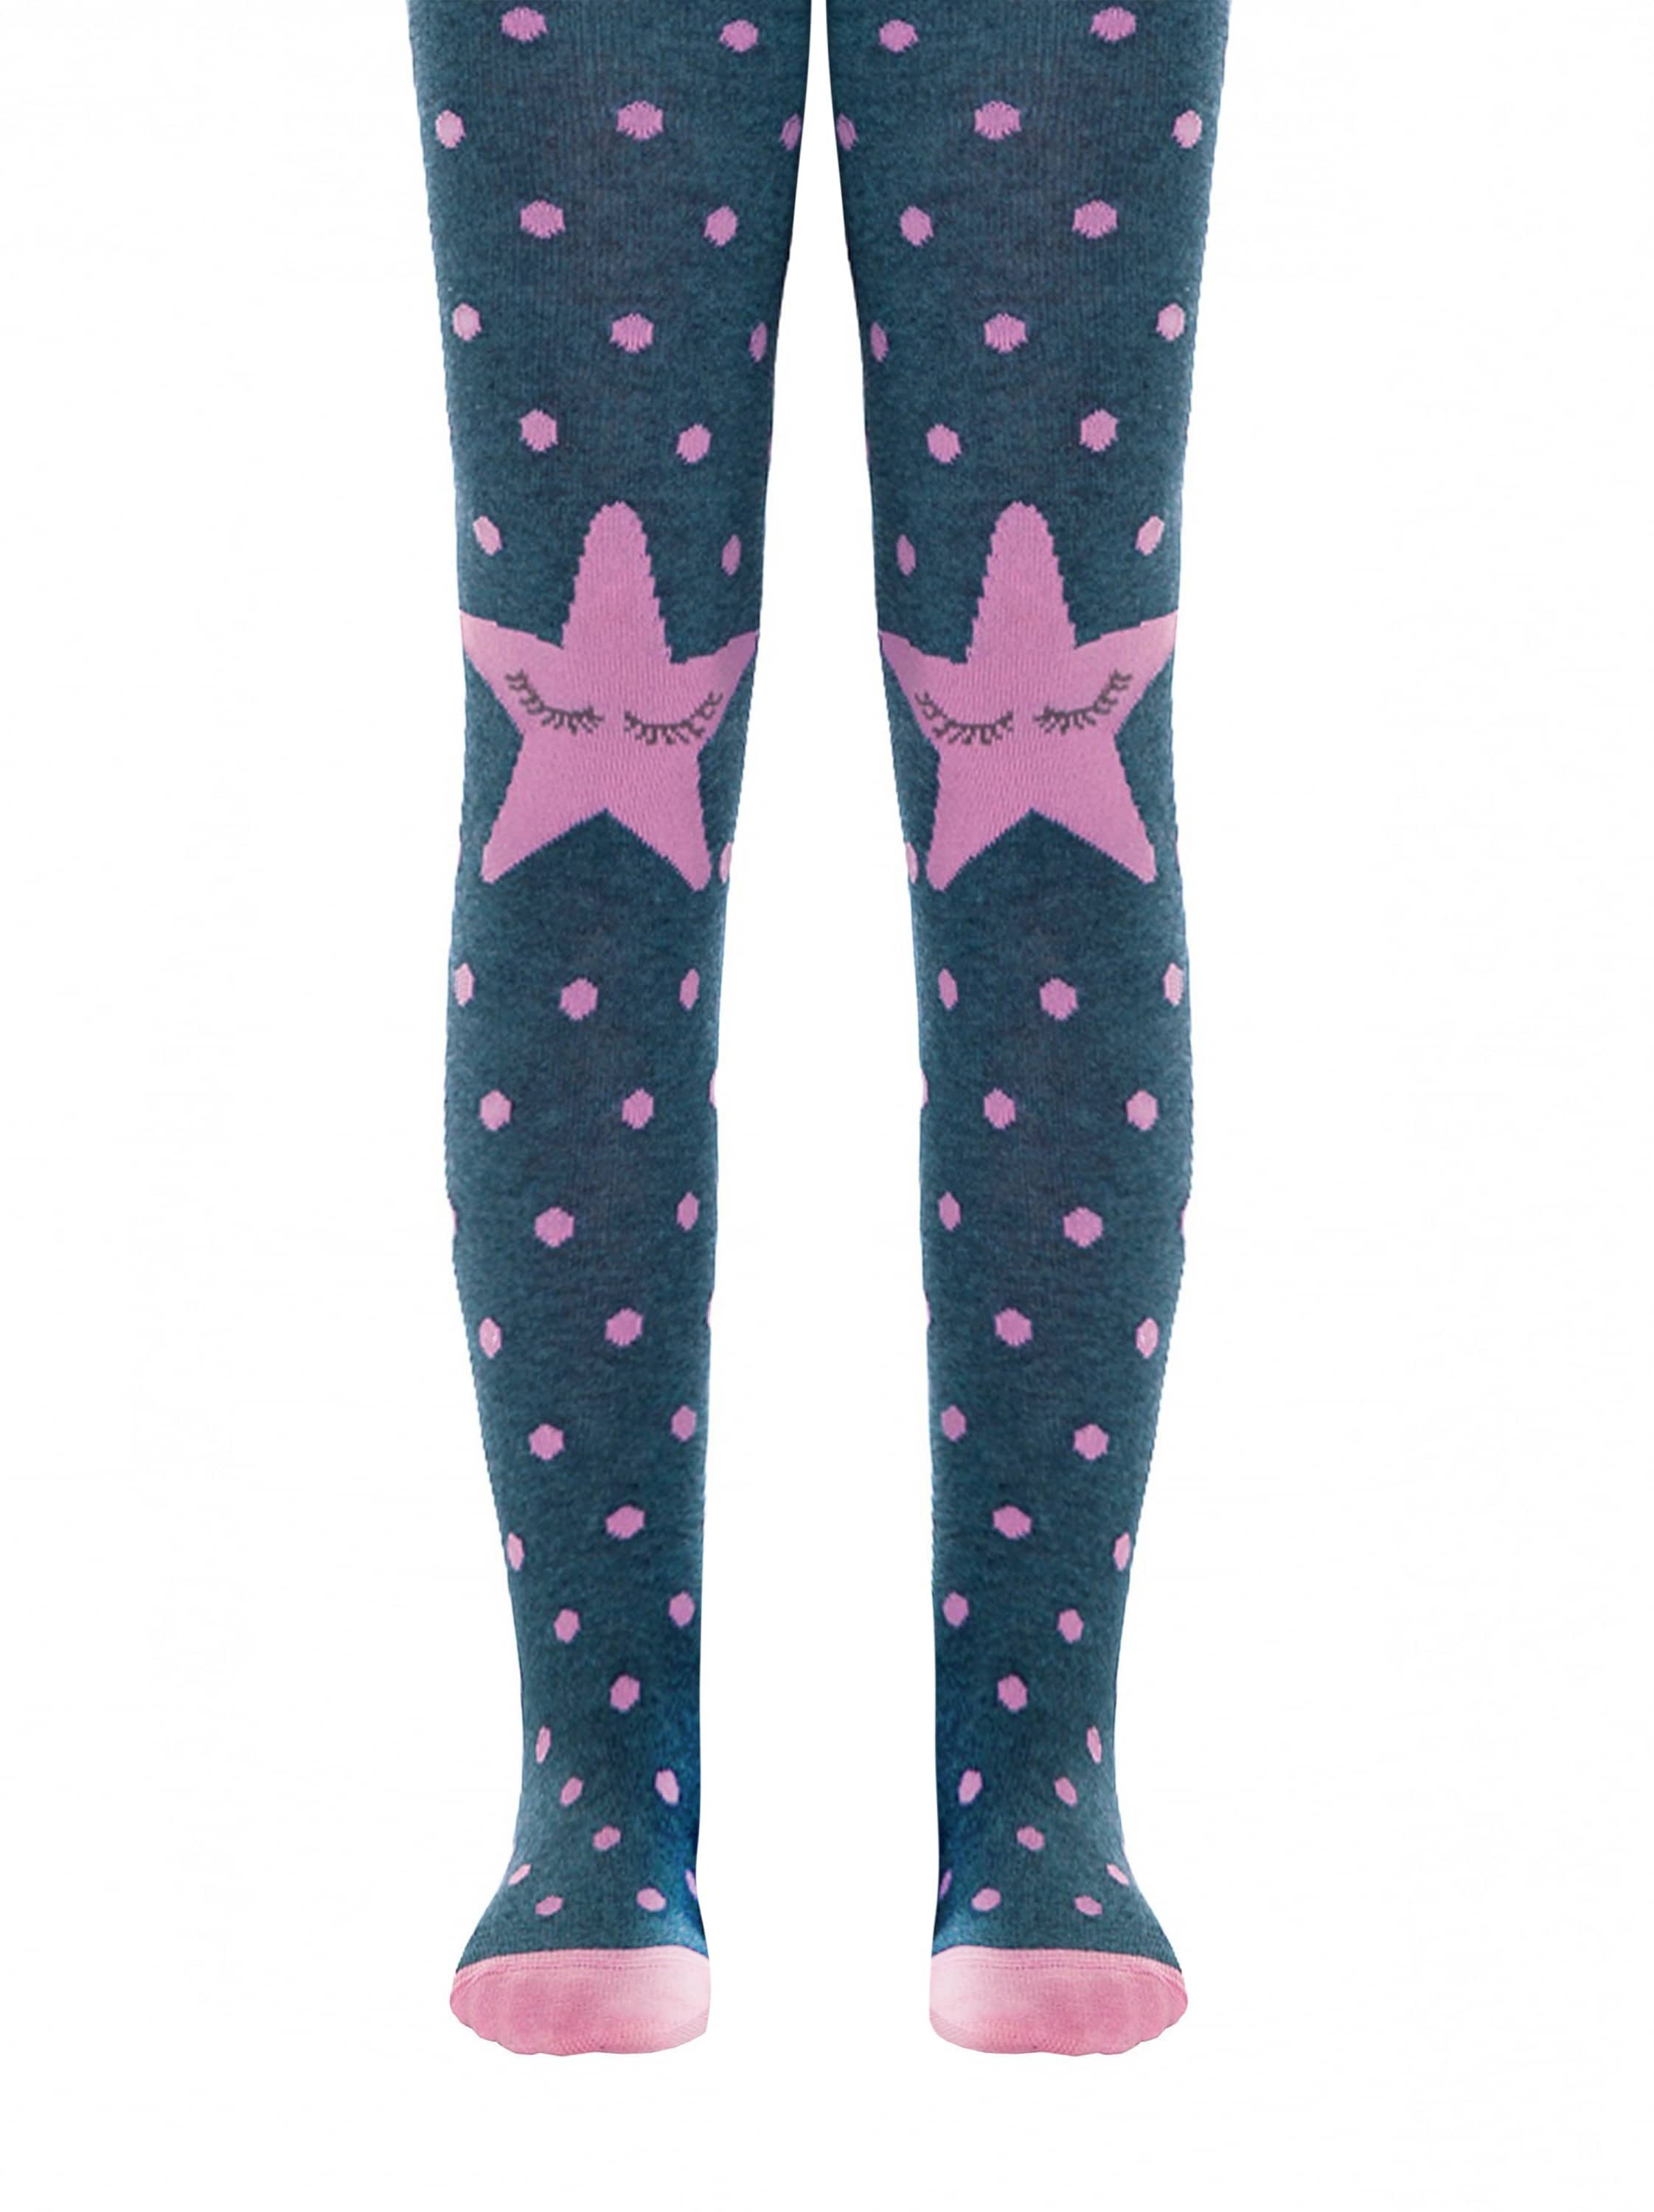 Hlačne nogavice iz bombaža za otroke s pikicami po hlačnici ter zvezdicama na kolenih Conte Kids STAR v modri barvi